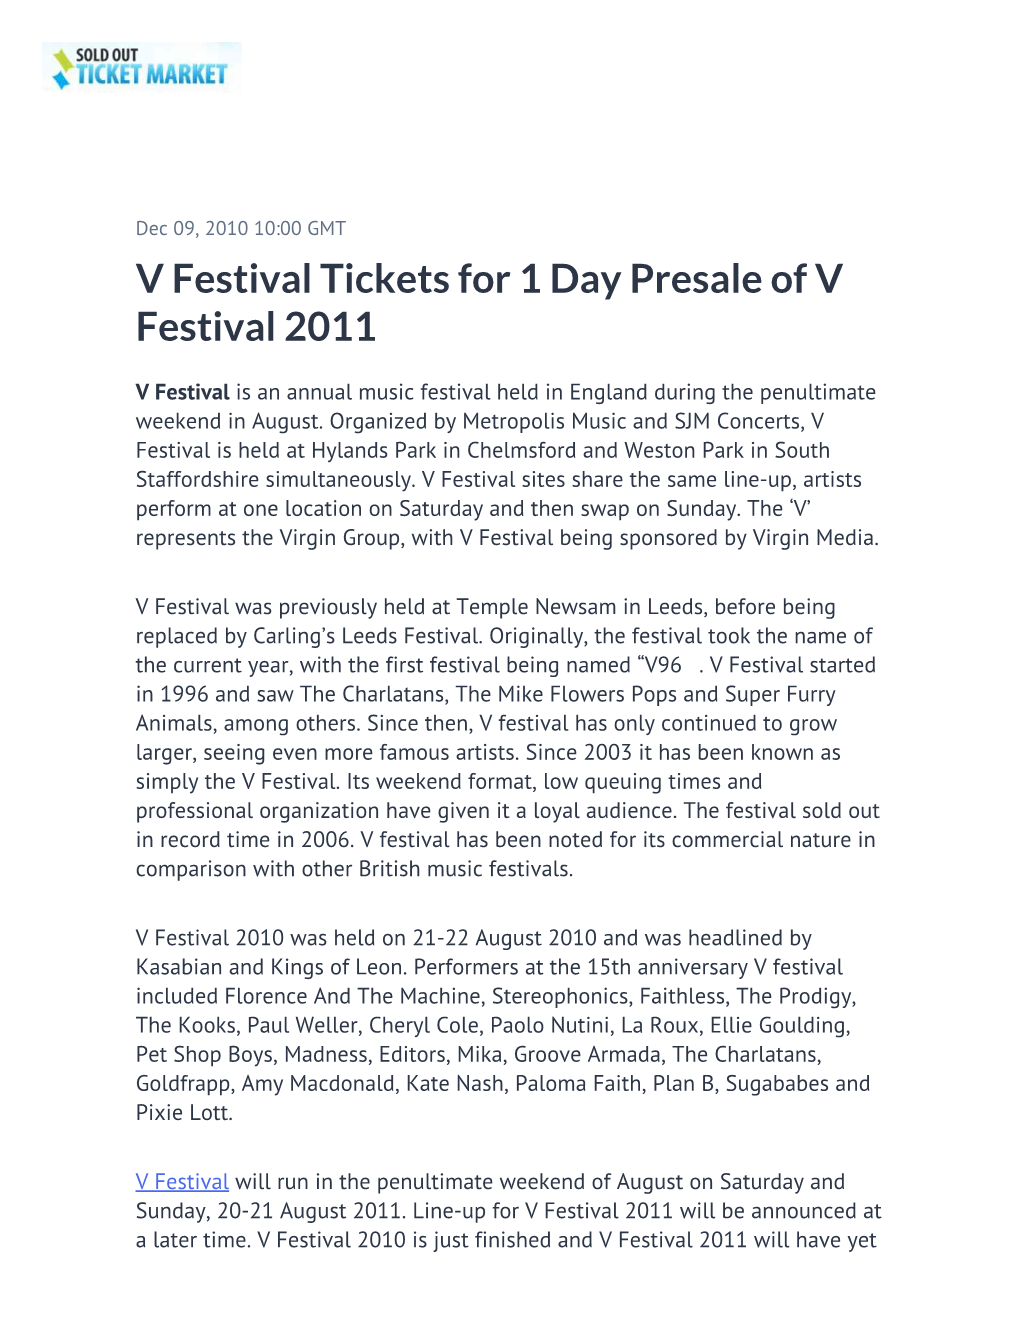 V Festival Tickets for 1 Day Presale of V Festival 2011